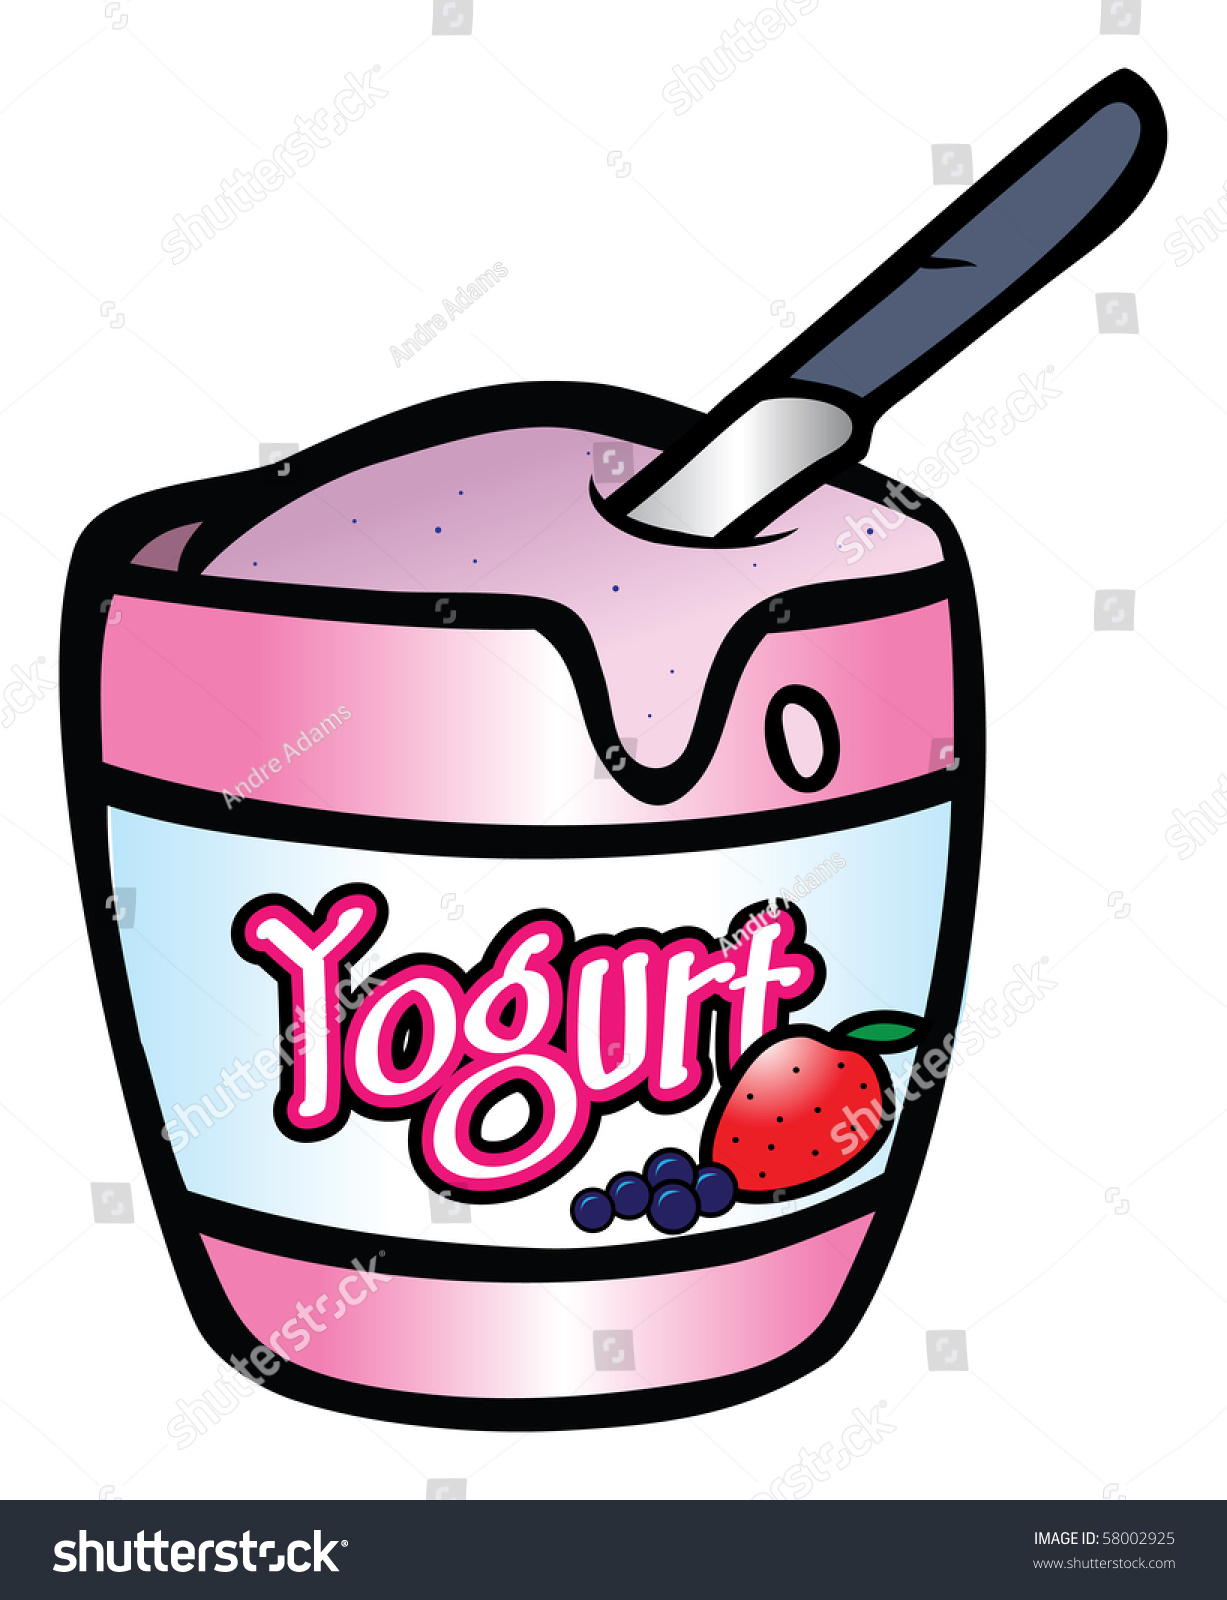 clipart yogurt - photo #37